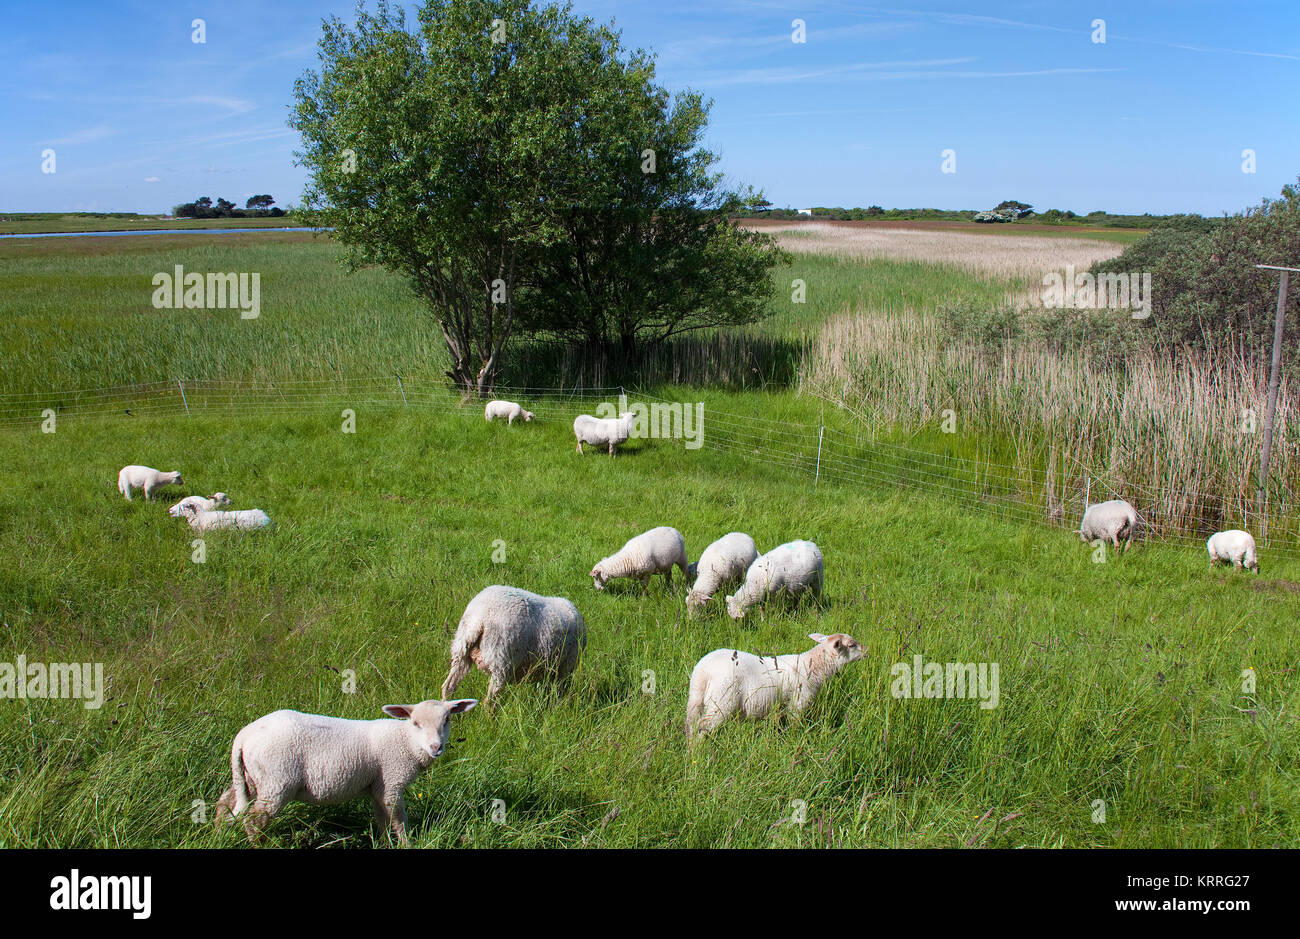 Moutons sur le terrain, près du village, l'île de Hiddensee Kloster, Mecklembourg-Poméranie-Occidentale, de la mer Baltique, l'Allemagne, de l'Europe Banque D'Images